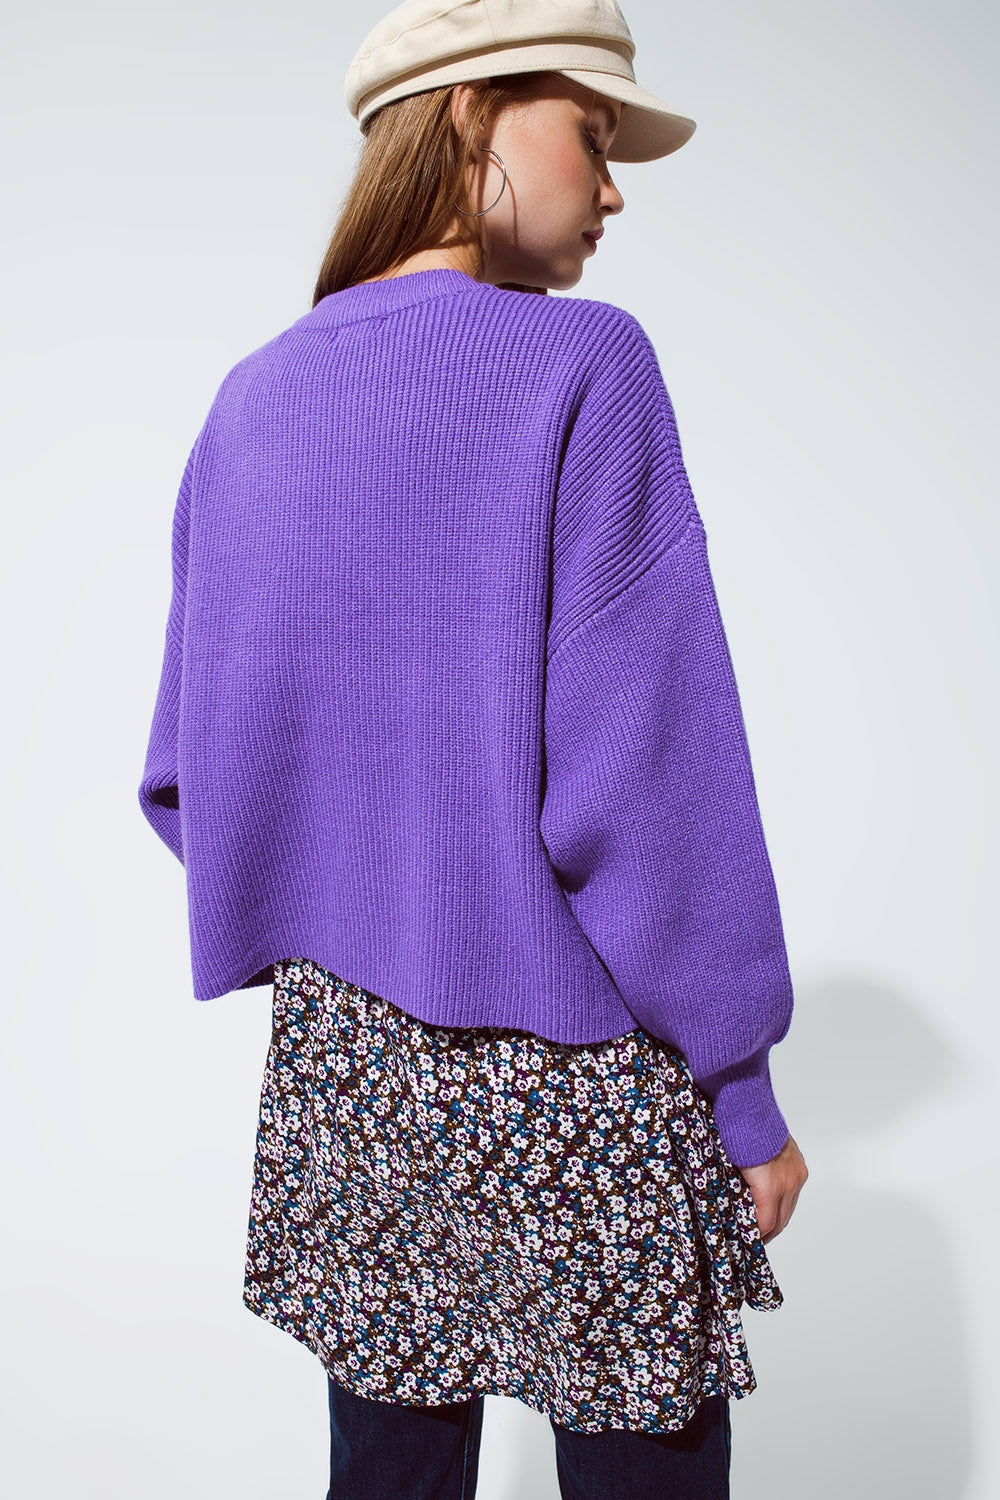 grob gestrickter lässiger Pullover für Damen in lila kaufen